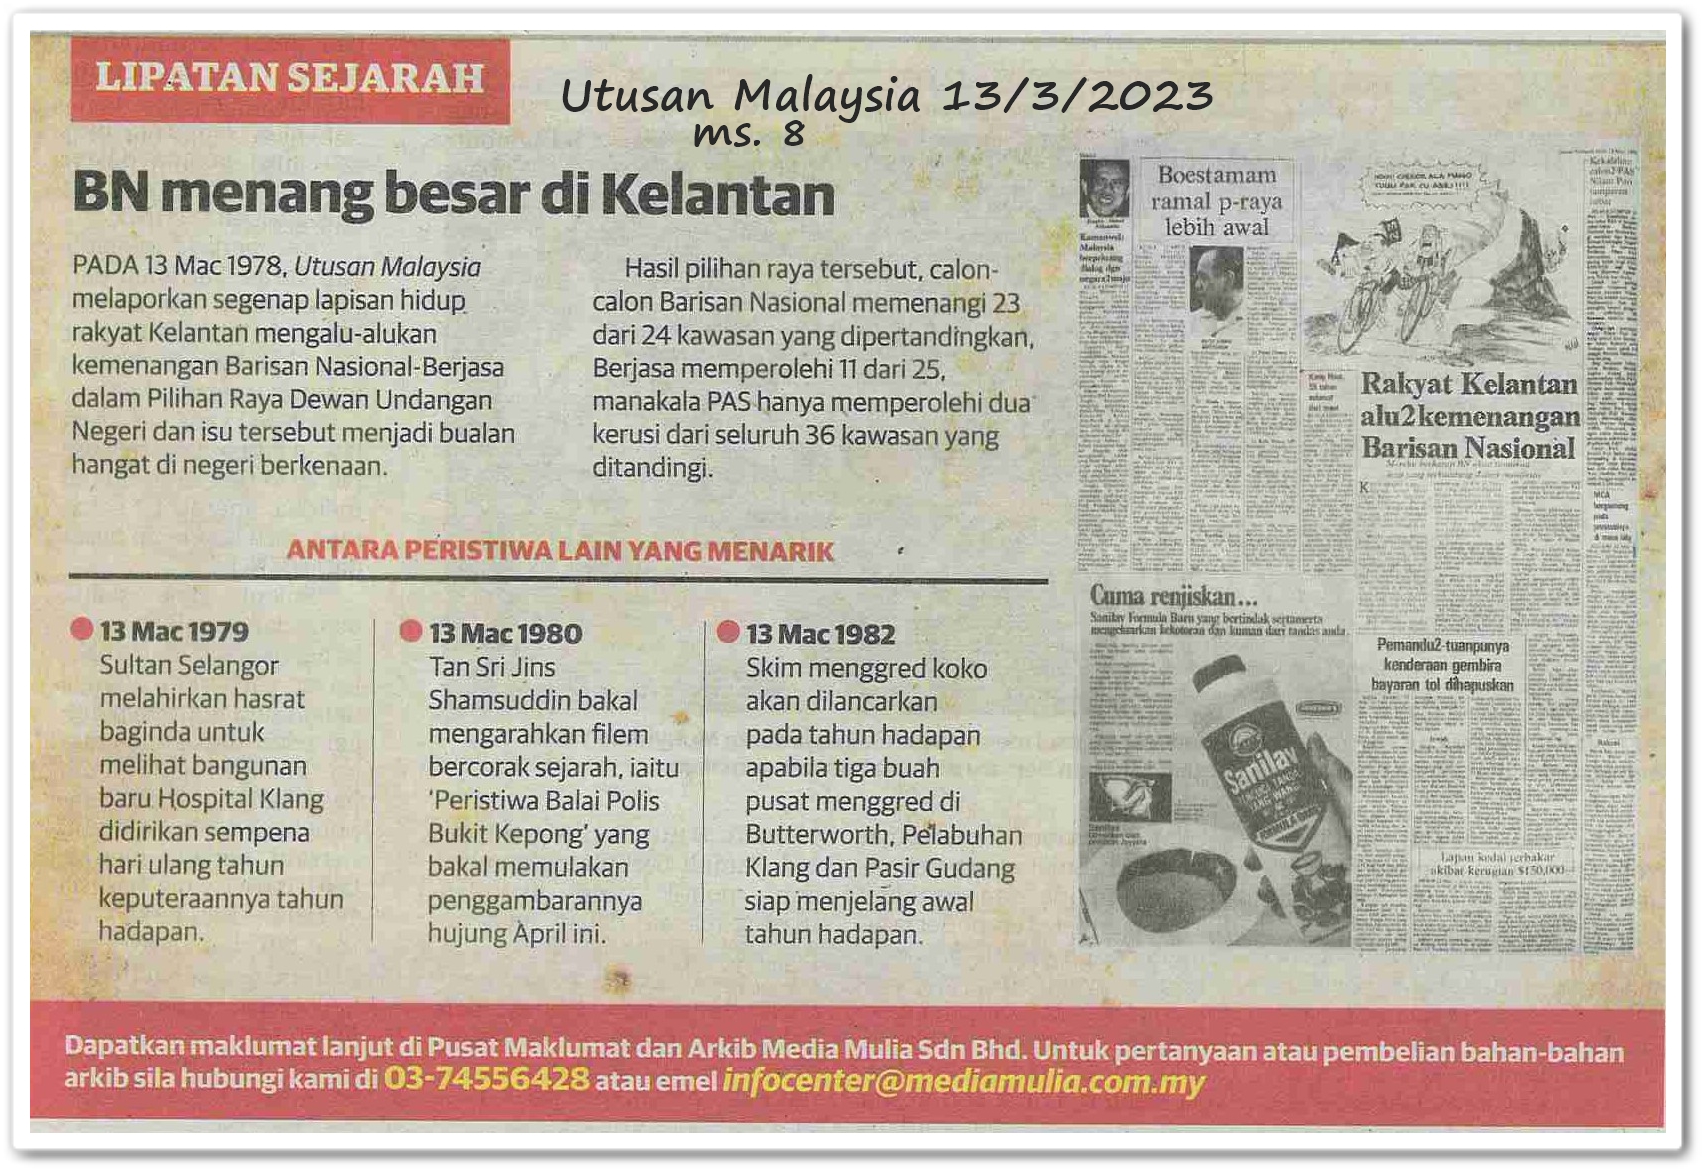 Lipatan sejarah 13 Mac - Keratan akhbar Utusan Malaysia 13 Mac 2023